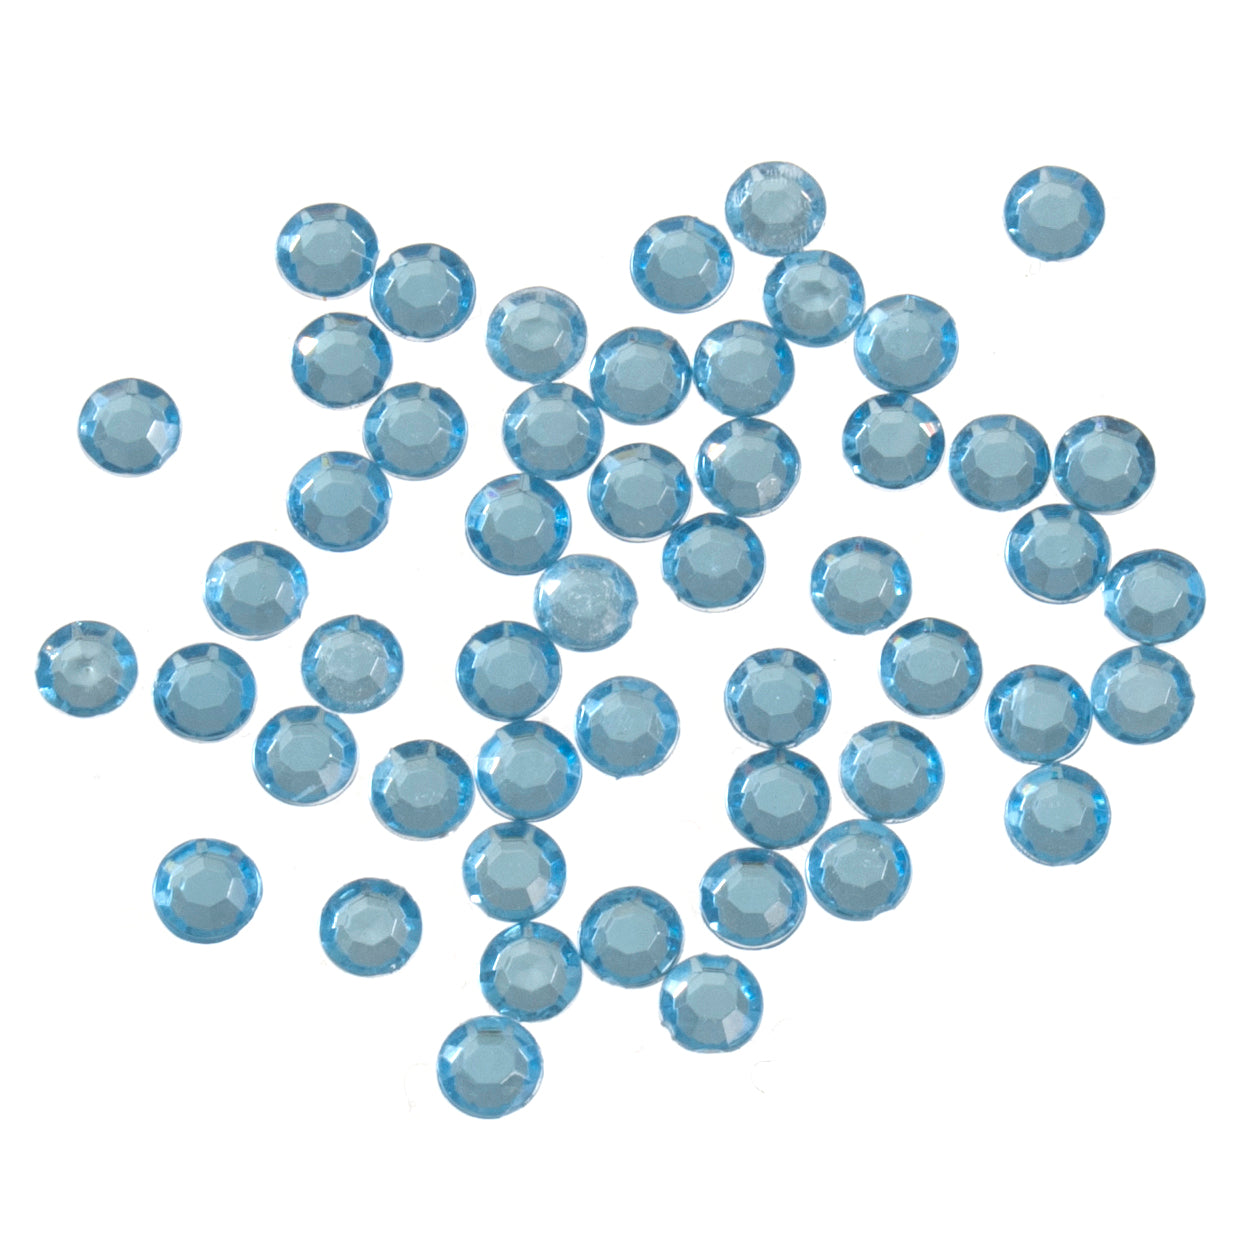 Trimits Acrylic Glue-On Gemstones - 5mm